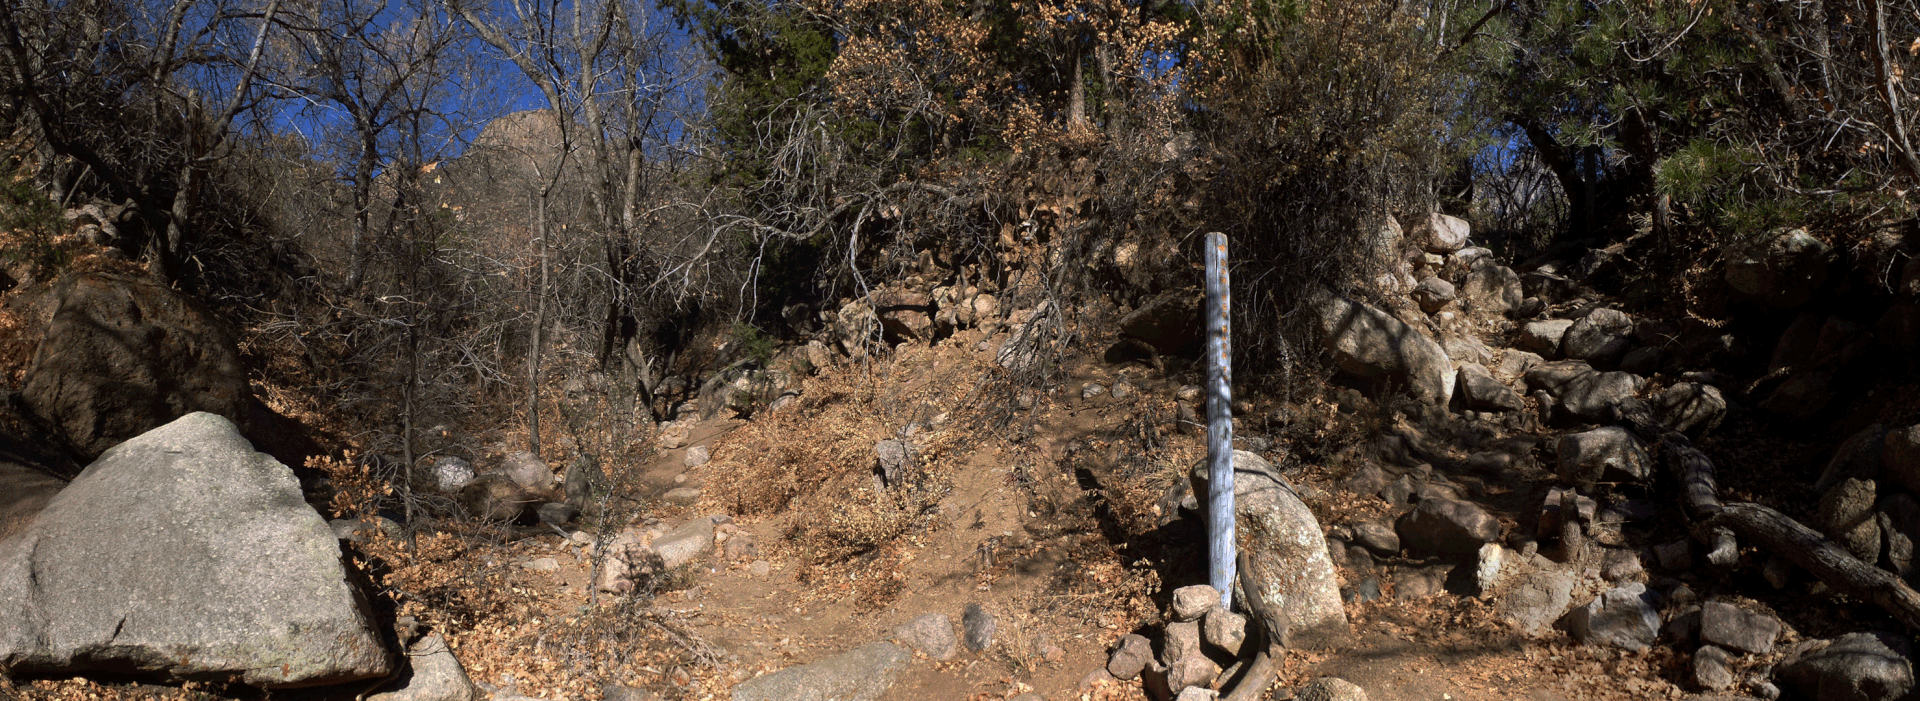 The TWA Crash Site, Sandia Mountains